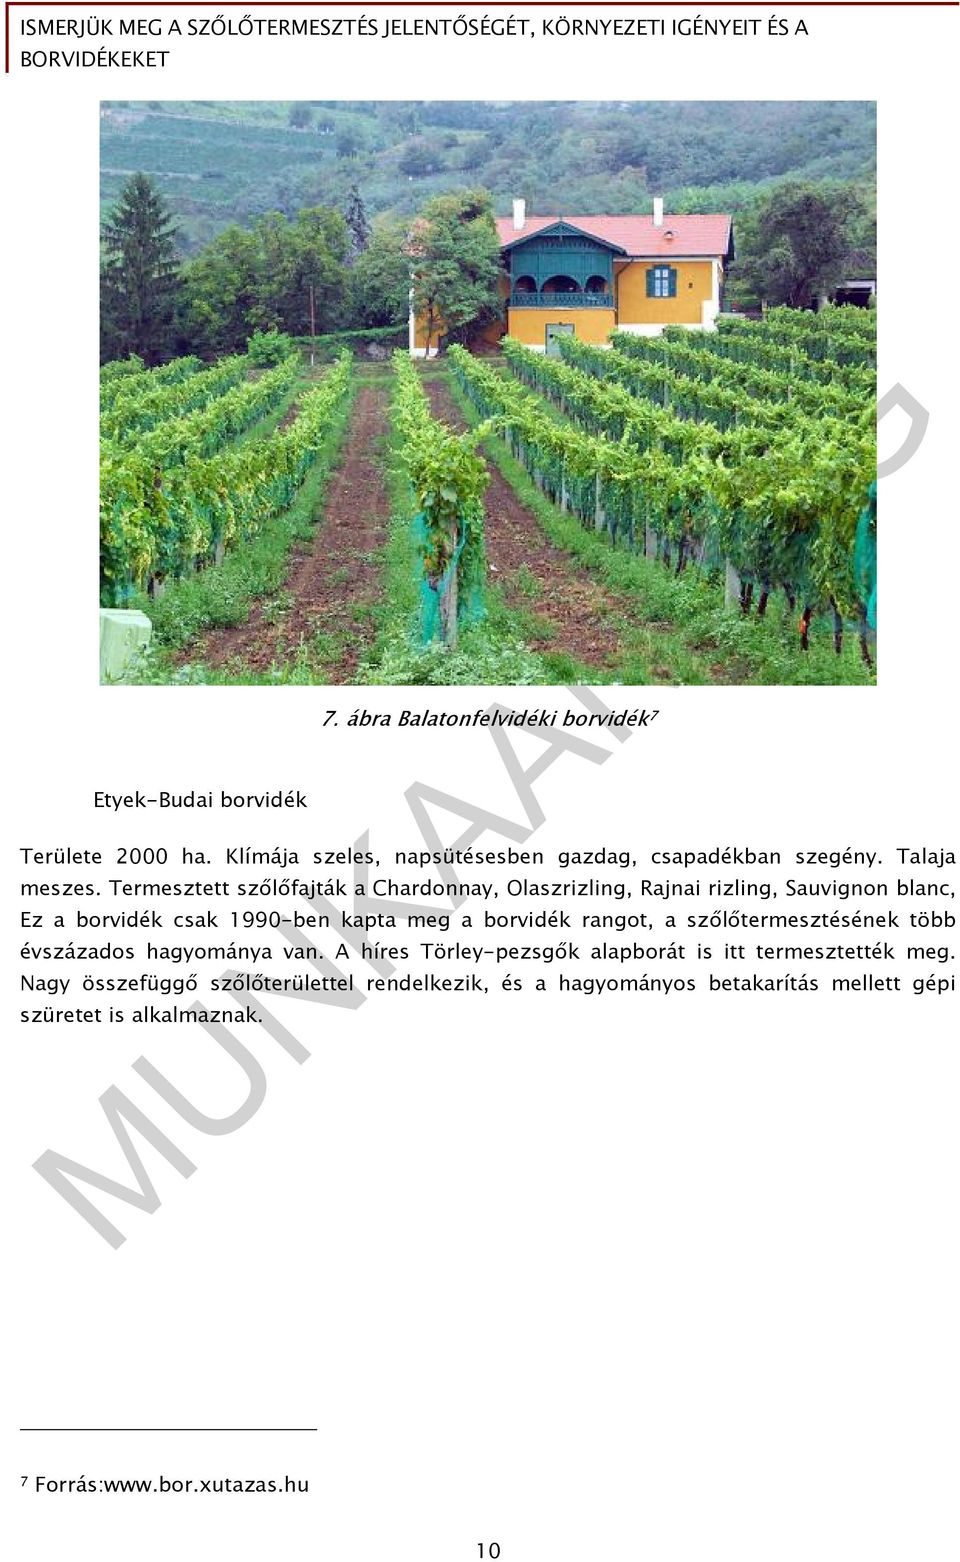 Termesztett szőlőfajták a Chardonnay, Olaszrizling, Rajnai rizling, Sauvignon blanc, Ez a borvidék csak 1990-ben kapta meg a borvidék